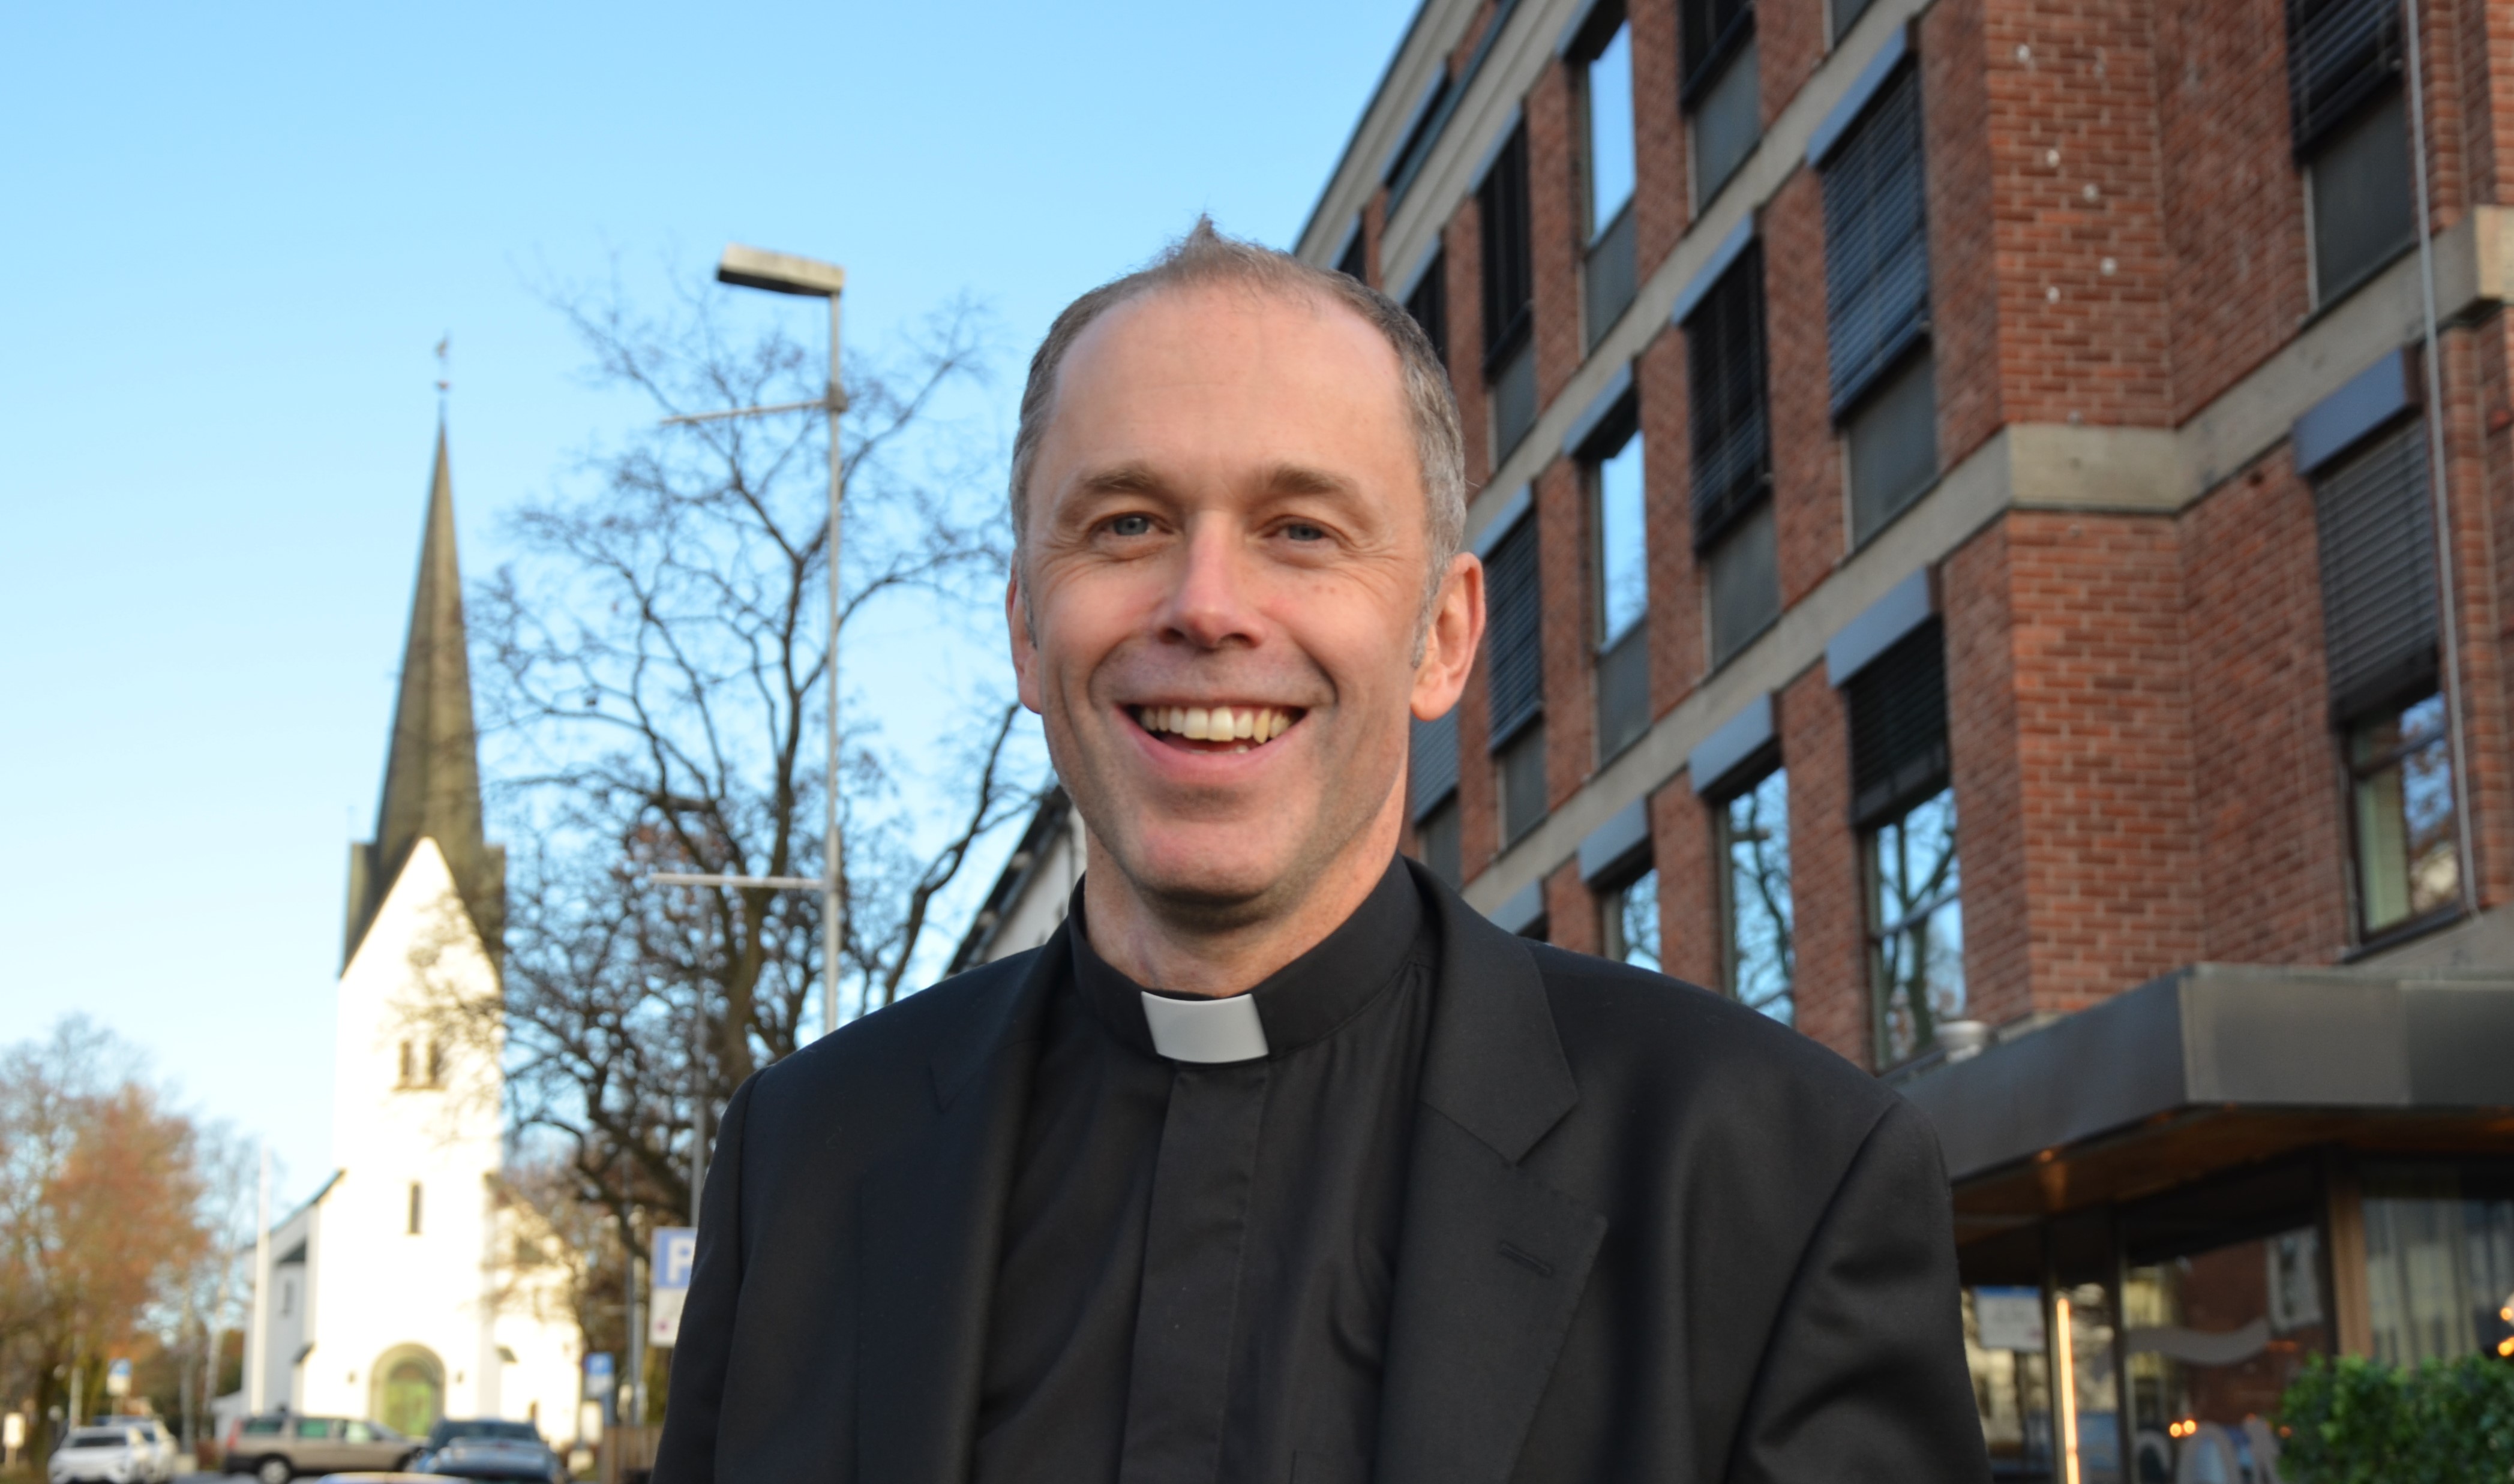 Ole Kristian Bonden vigsles til biskop i Hamar søndag 29. januar. Foto: Hamar bispedømme